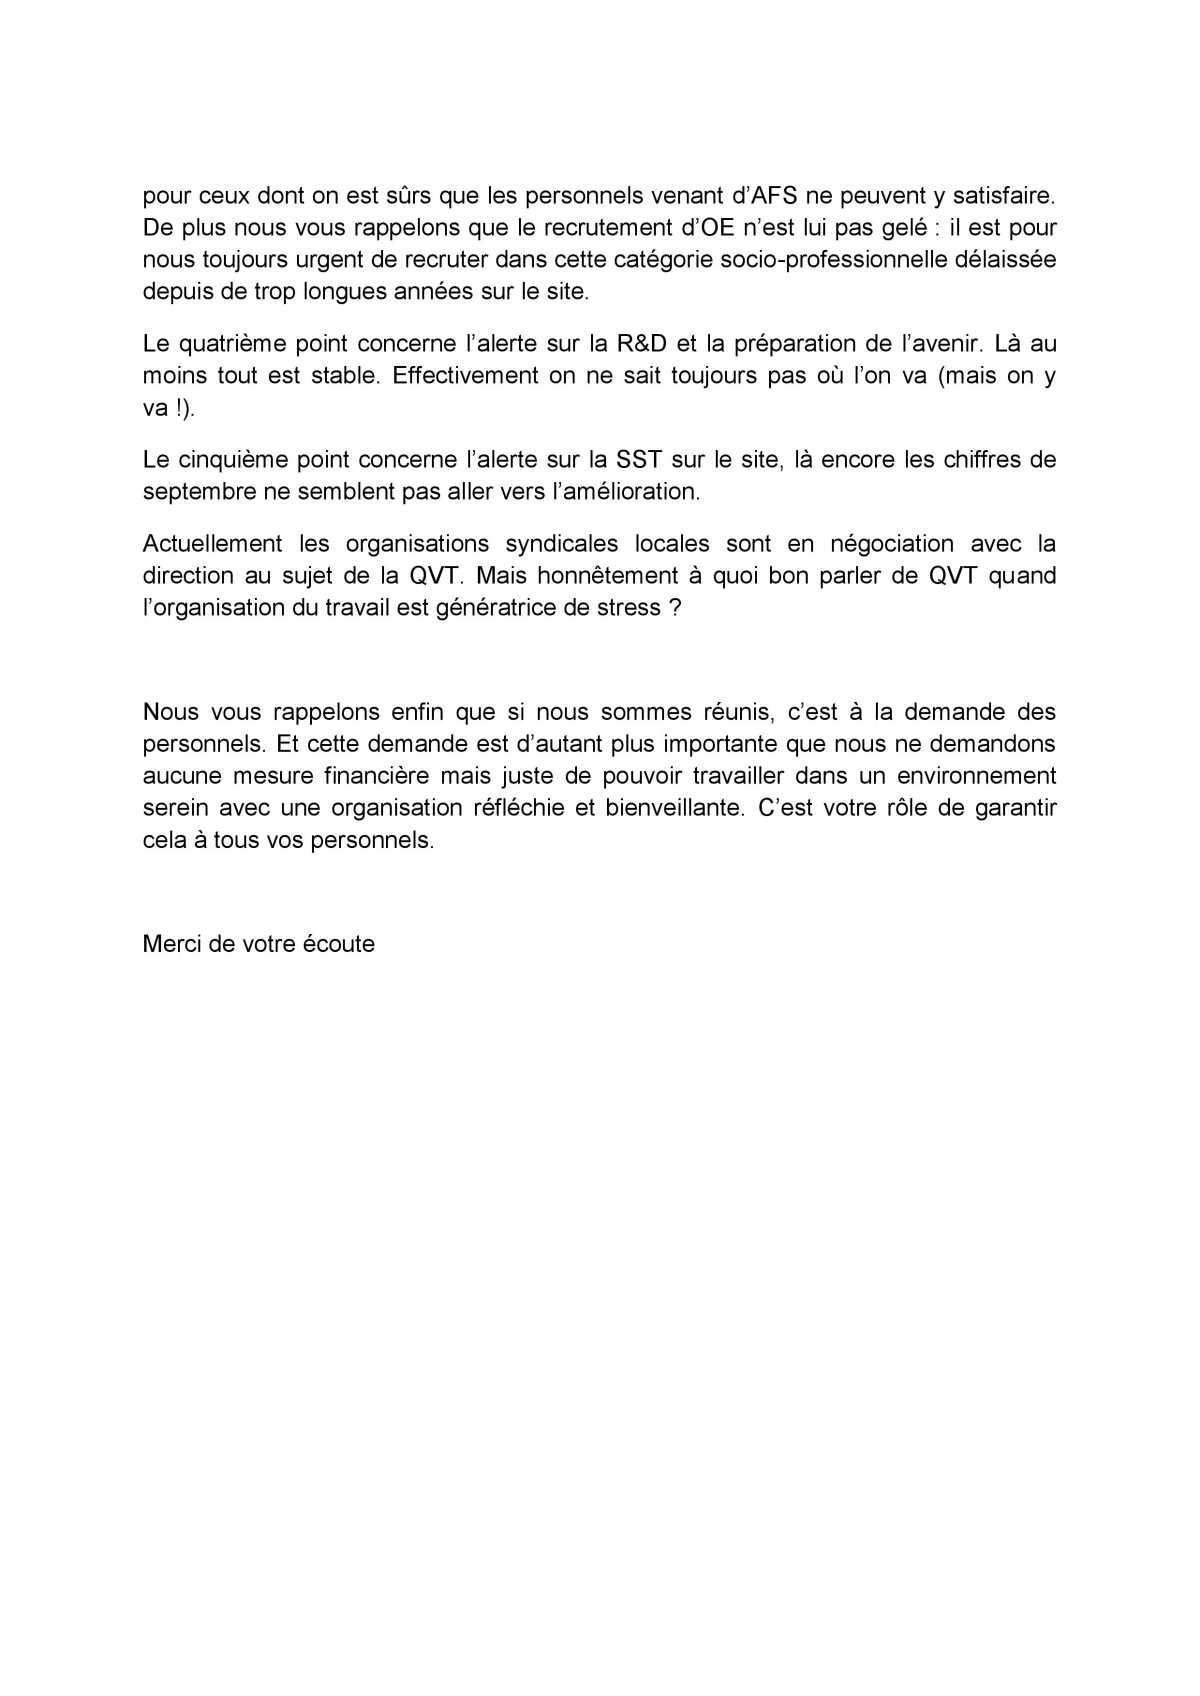 Visite de Laurent Espinasse - 6 octobre 2021 - Déclaration liminaire des OS